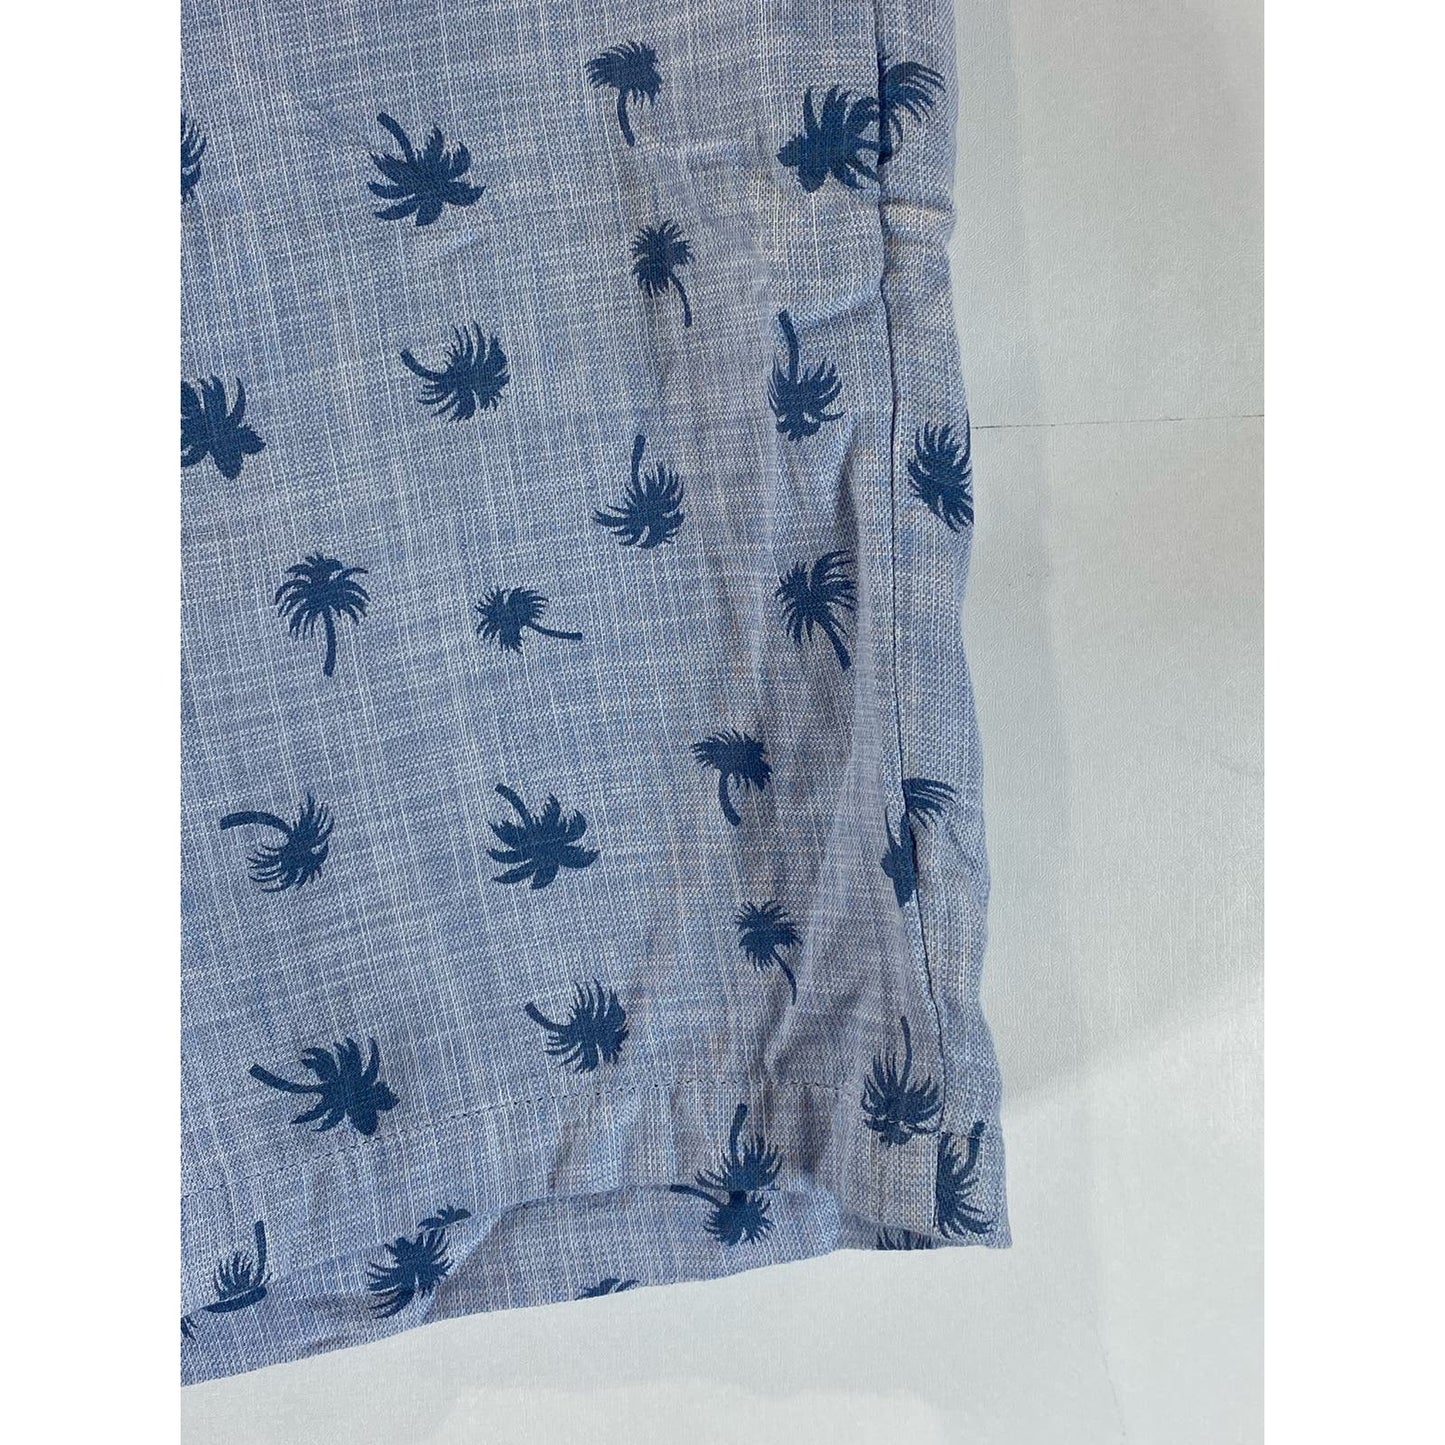 CLUB MONACO Men's Blue Palm Tree Print Maddox-Fit Shorts SZ 34